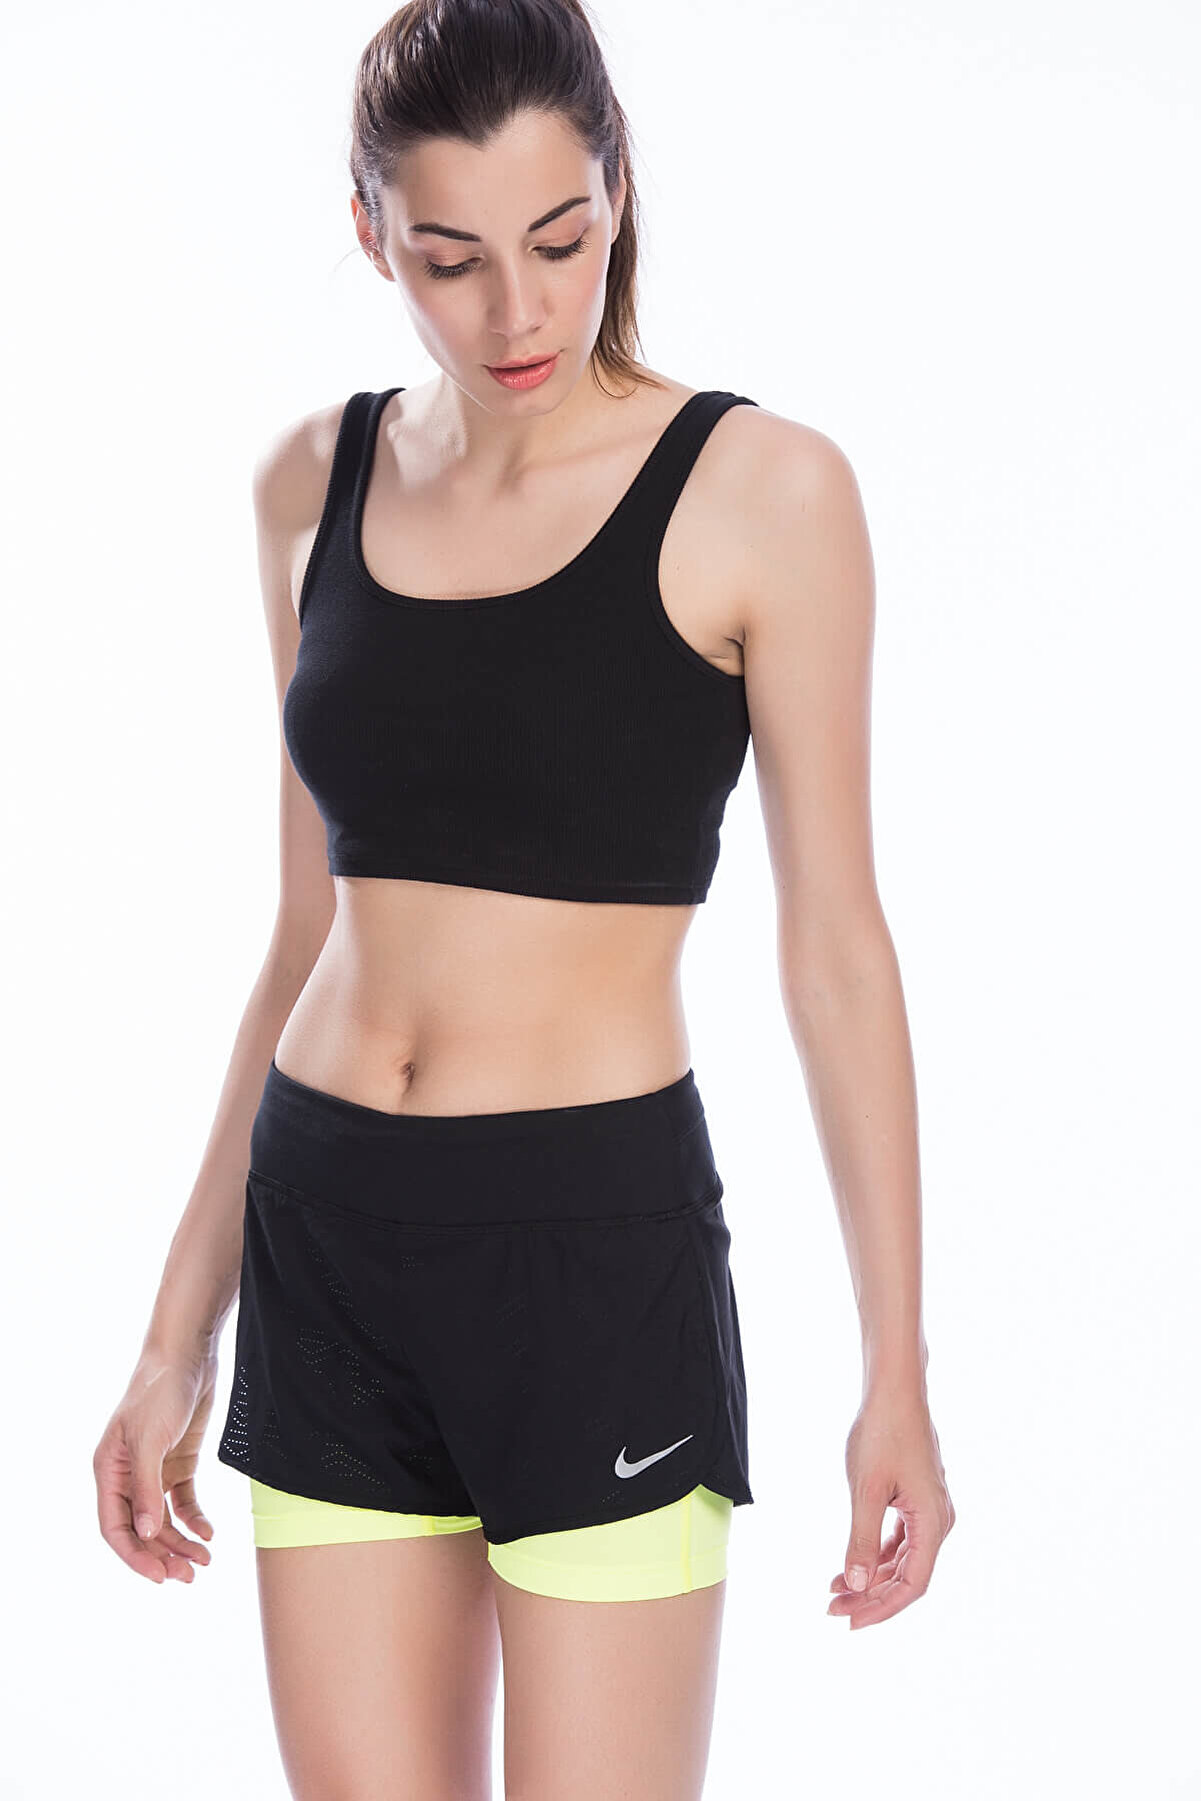 Nike Kadın Şort - W Nk Flx 2in1 Short Rival - 831552-010